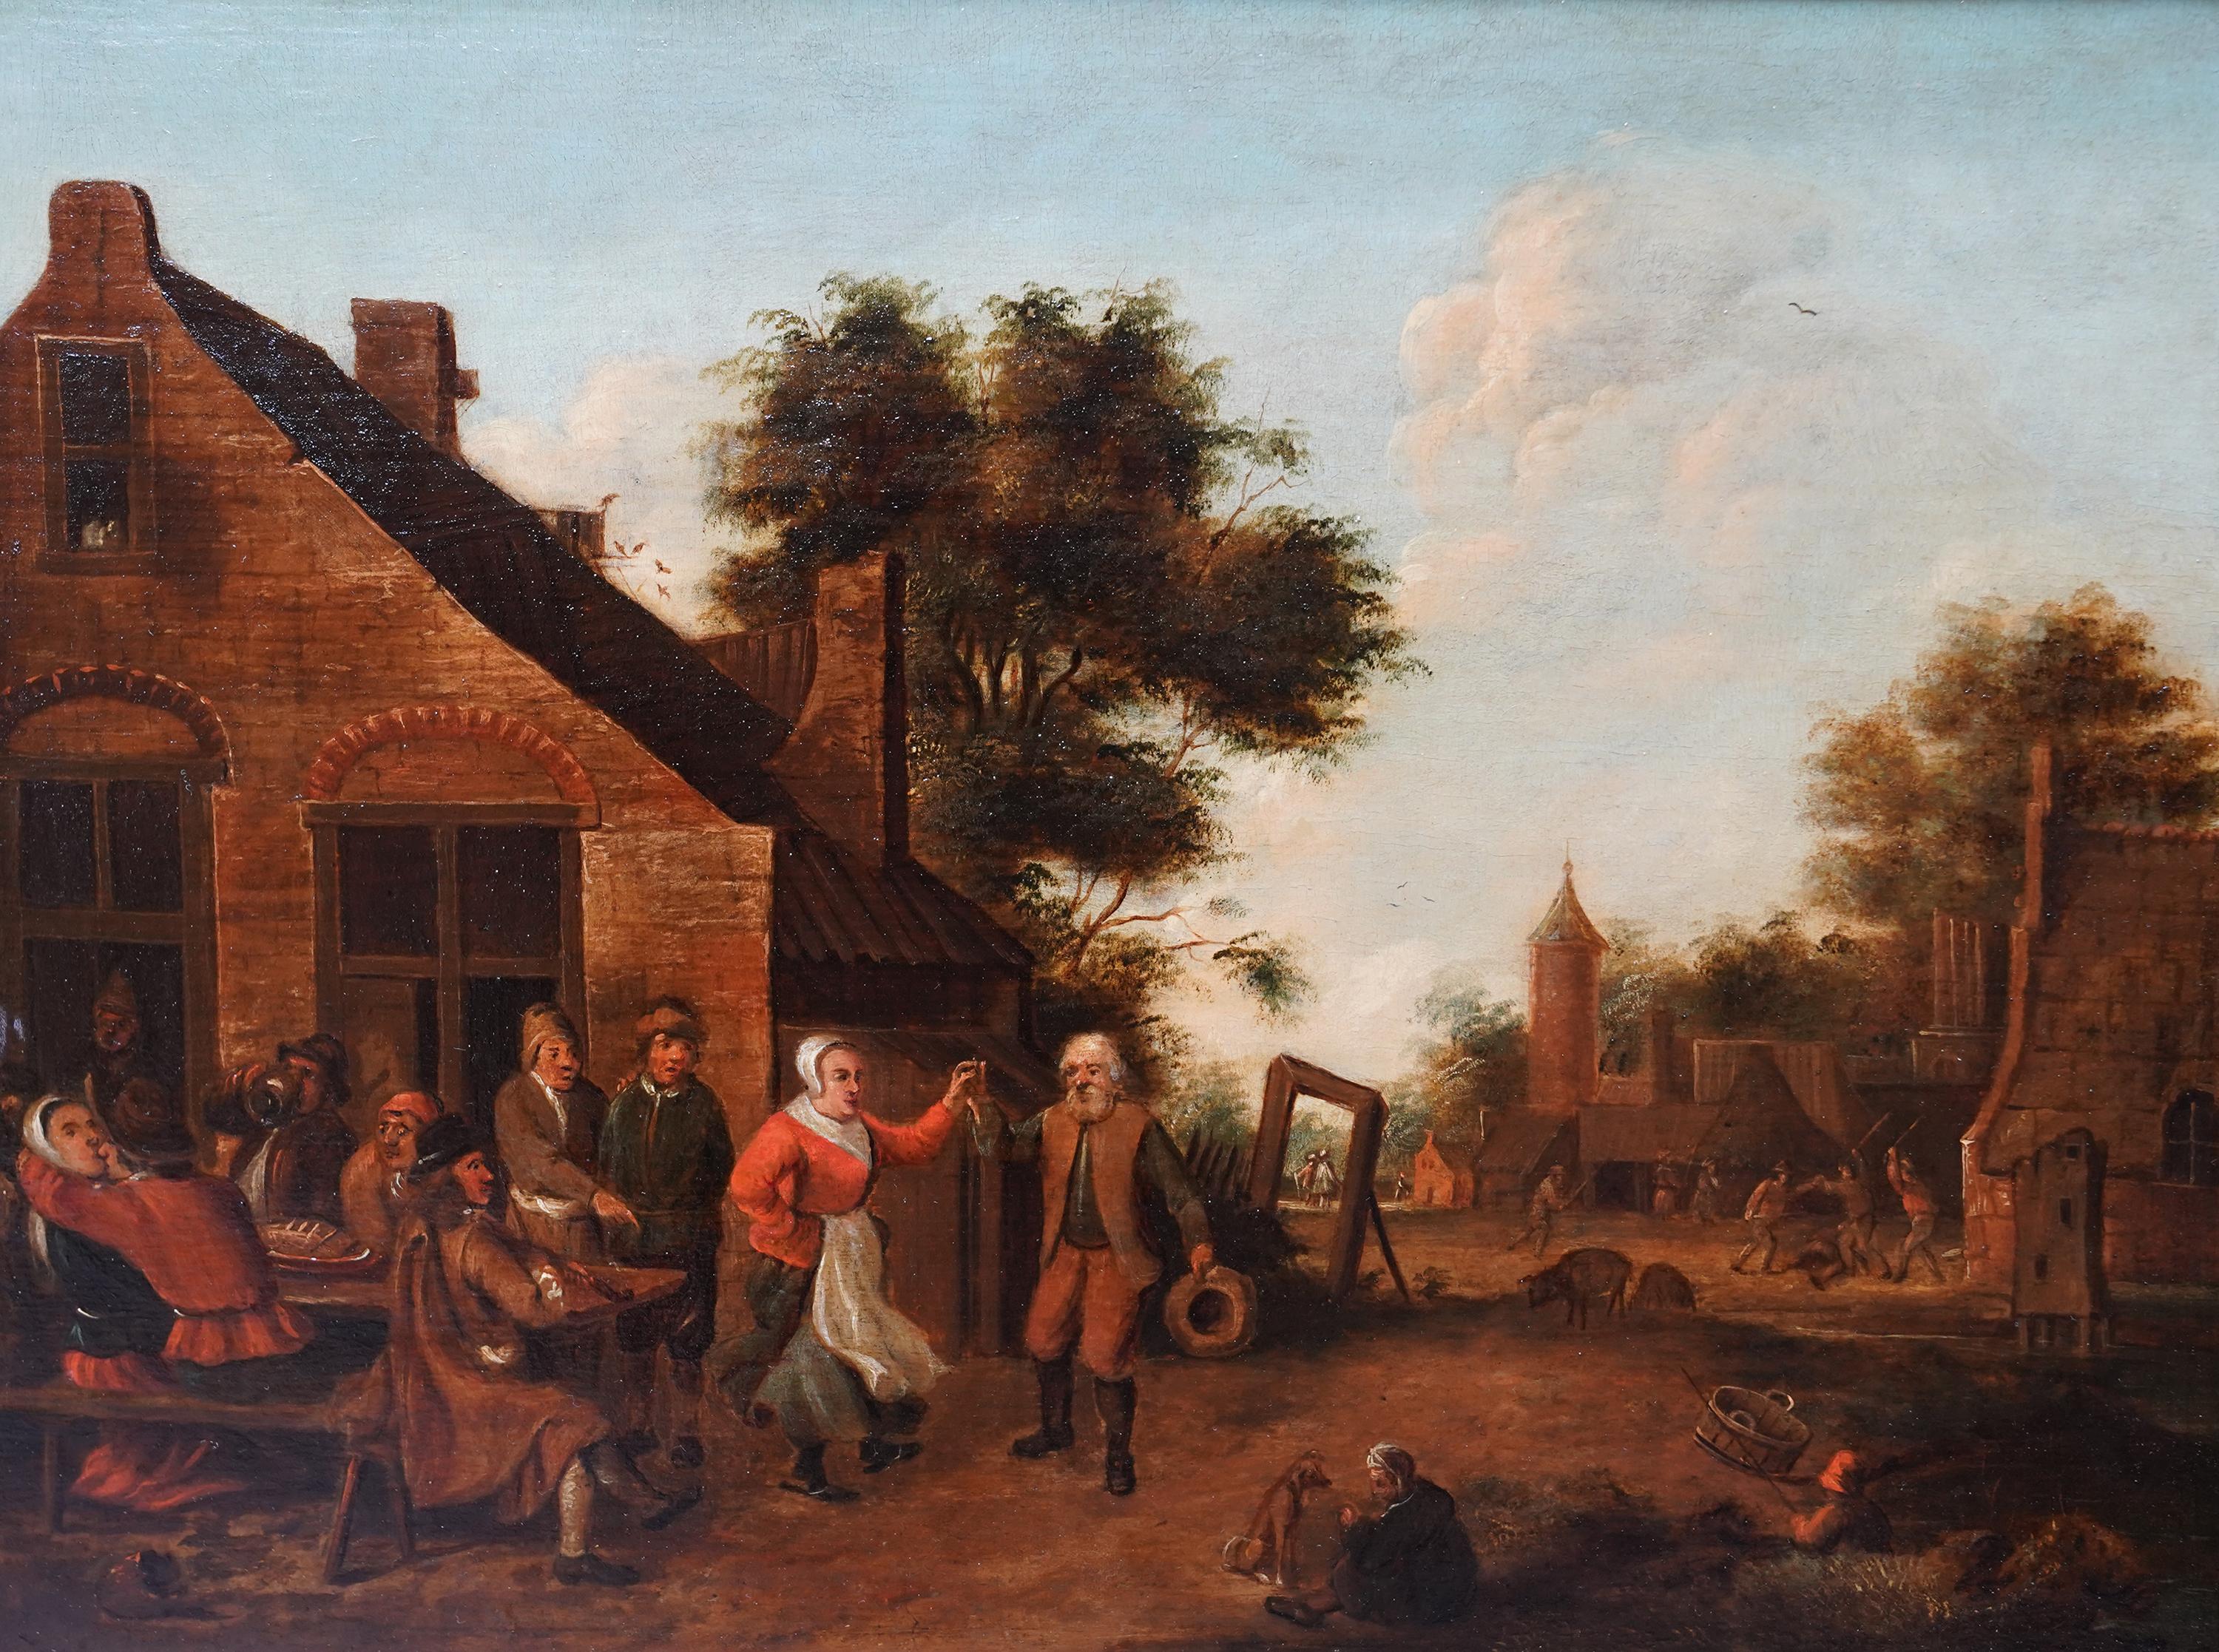 Dorfbewohner in einer Landschaft - Flämische Kunst des 17. Jahrhunderts figurative Landschaft Ölgemälde – Painting von Thomas van Apshoven